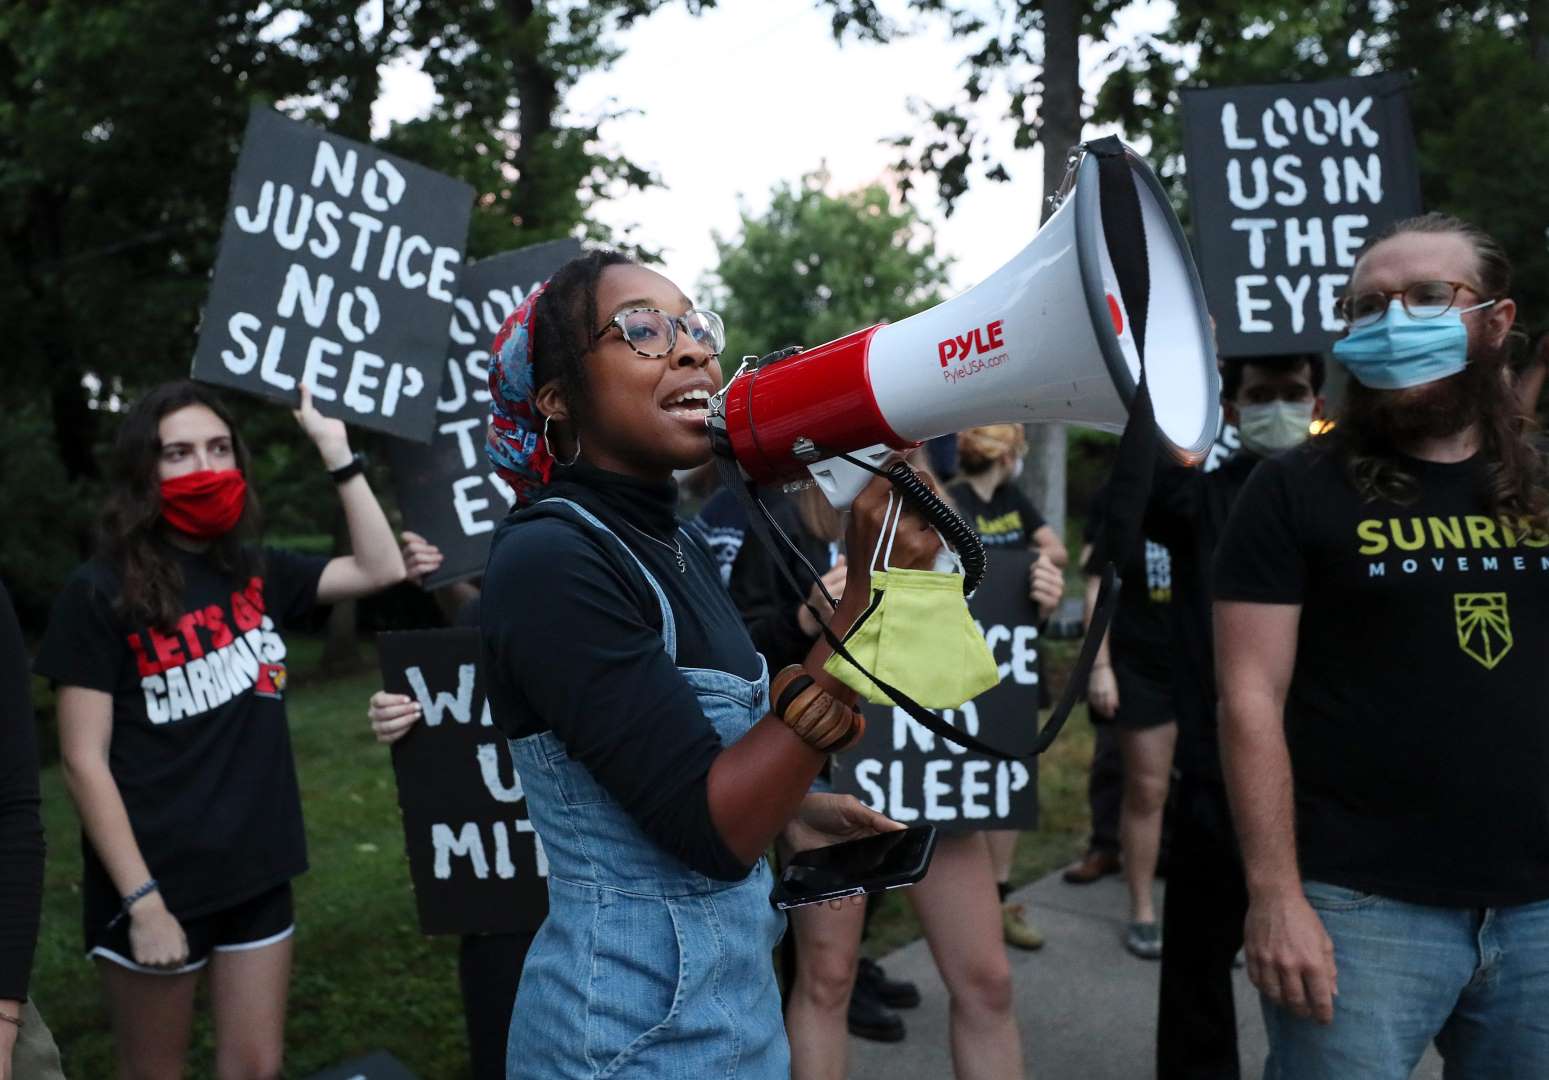 Ein Sunrise-Aktivist spricht in ein Megaphon, während andere Demonstranten hinter Schildern mit der Aufschrift "Keine Gerechtigkeit, kein Schlaf" und "Schau uns in die Augen" stehen.